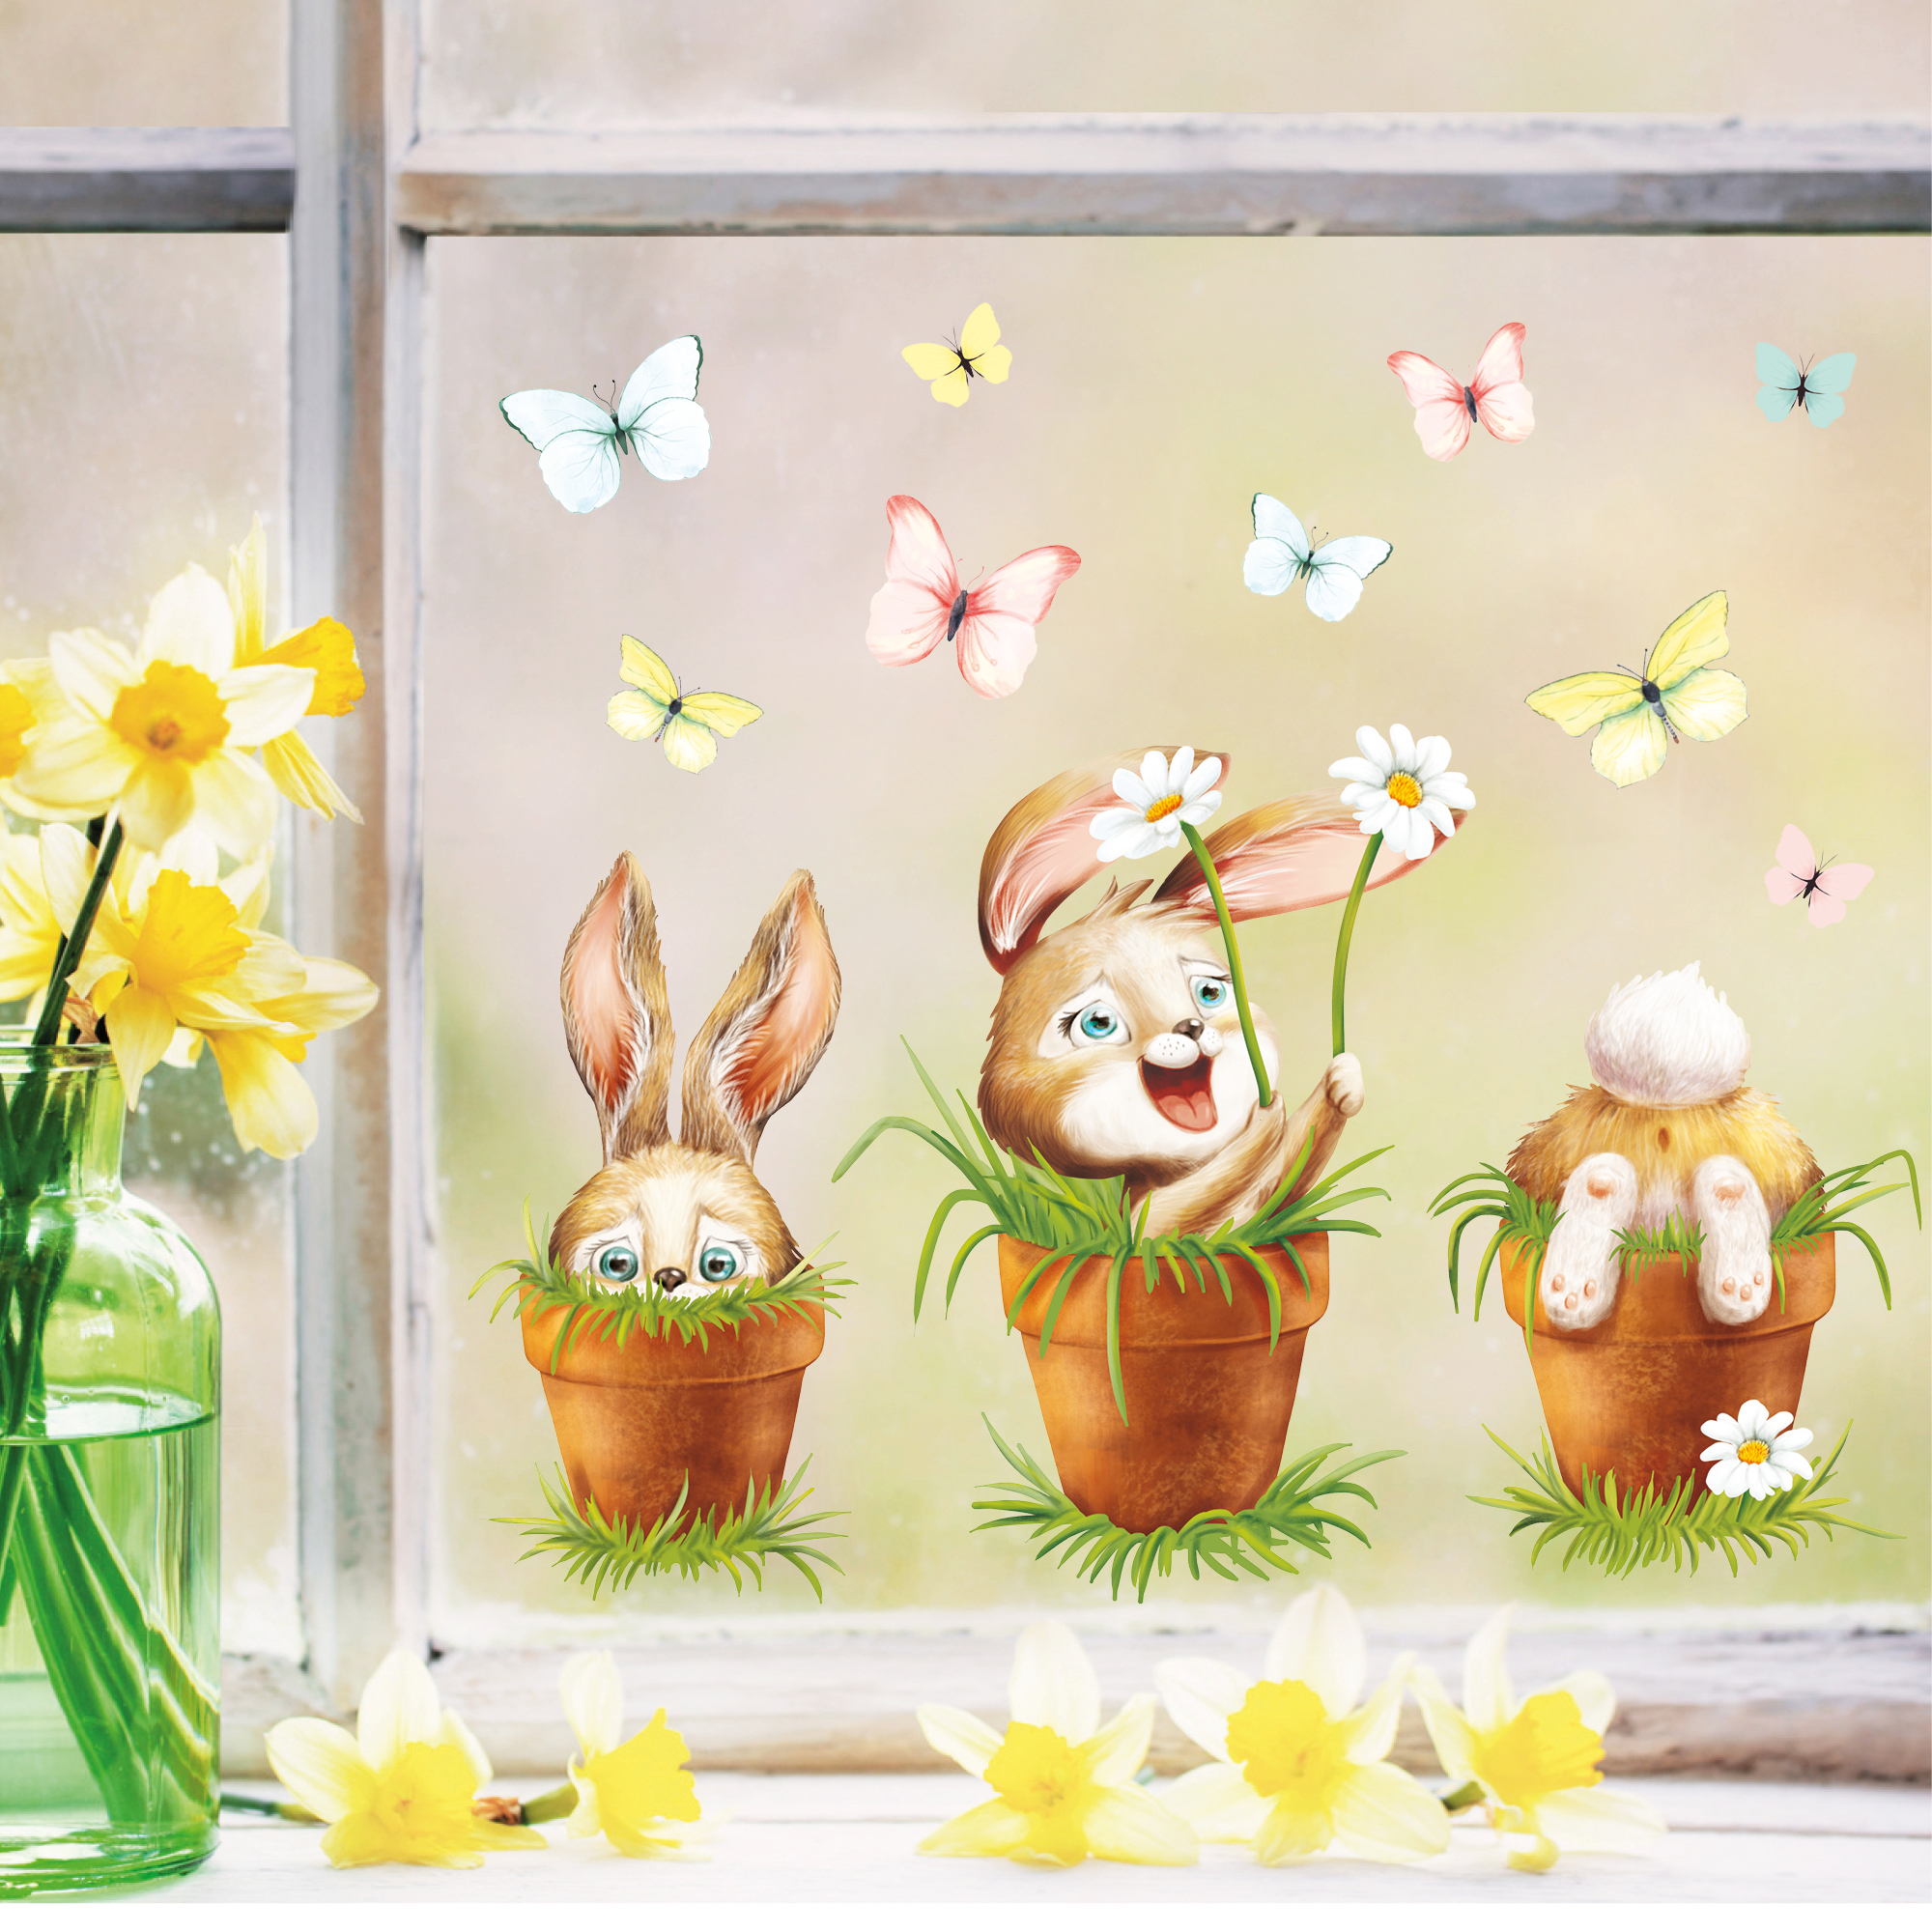 Fensterbild Frühling Ostern 3 Hasen im Blumentopf mit Schmetterlingen Fensterdeko Kinderzimmer Kind Frühlingsdeko